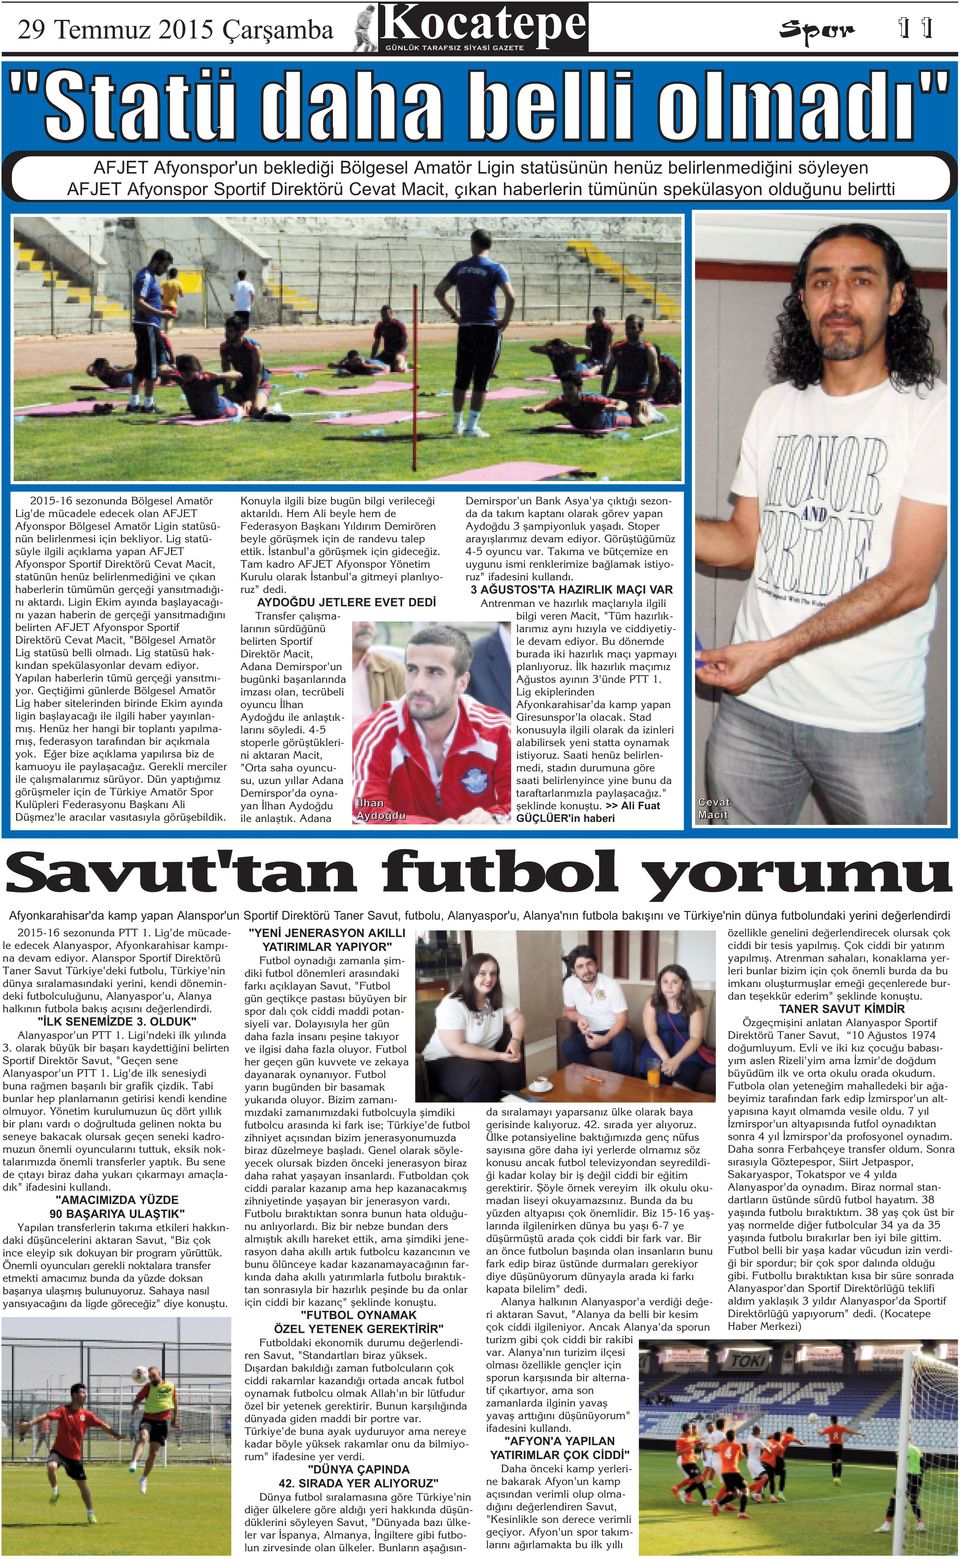 Lig statüsüyle ilgili aç klama yapan AFJET Afyonspor Sportif Direktörü Cevat Macit, statünün henüz belirlenmediğini ve ç kan haberlerin tümümün gerçeği yans tmad ğ n aktard.